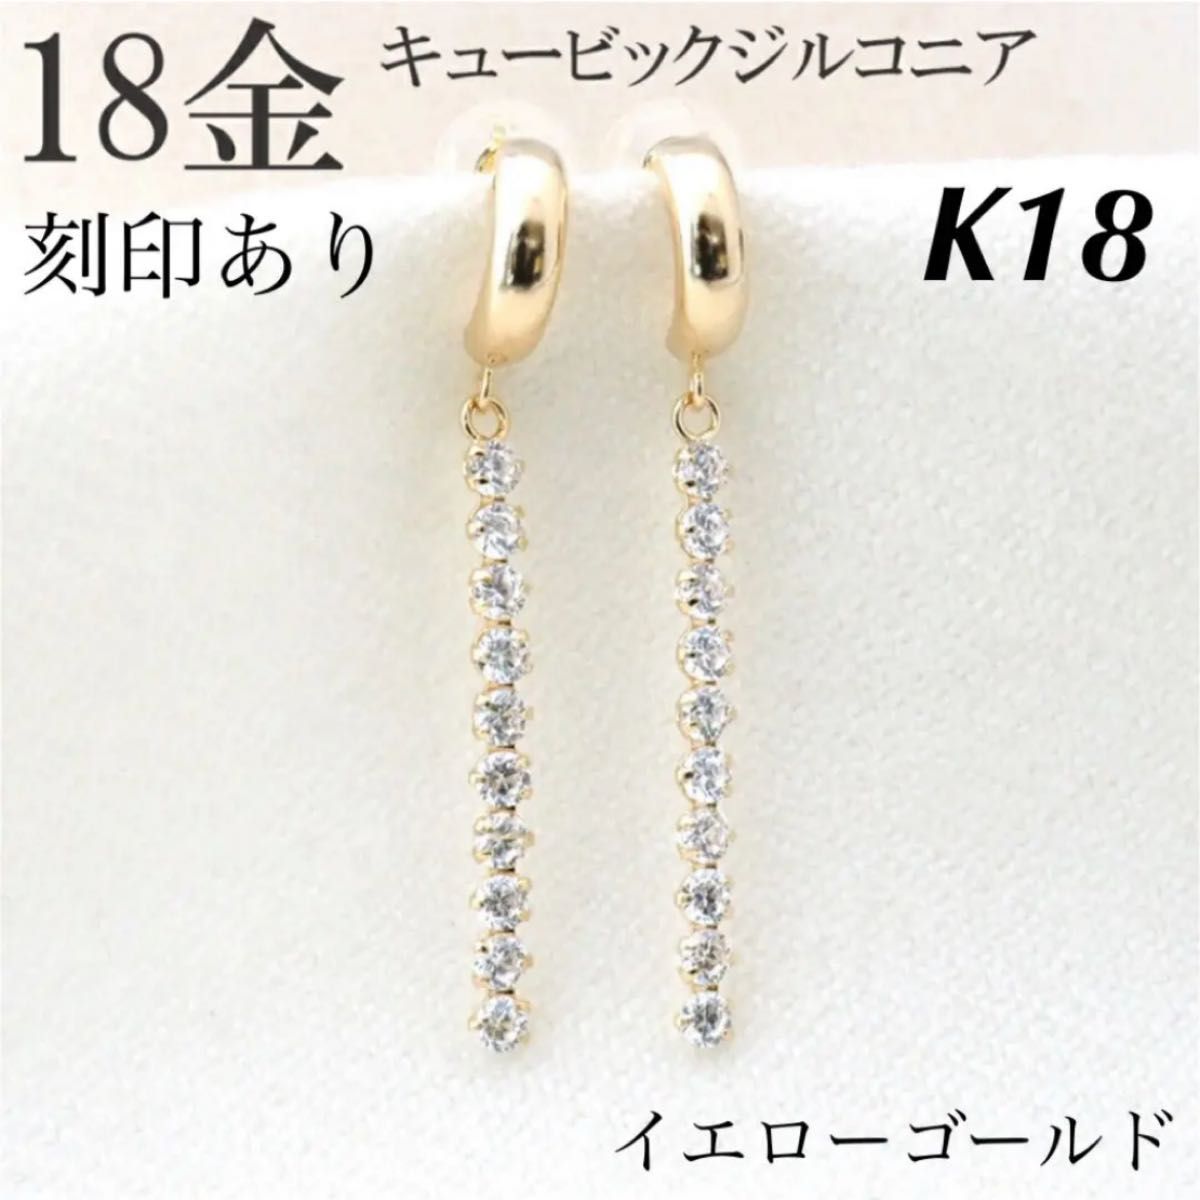 新品 K18 イエローゴールド ロングピアス  アメリカンピアス 18金ピアス 刻印あり 上質 日本製 ペア